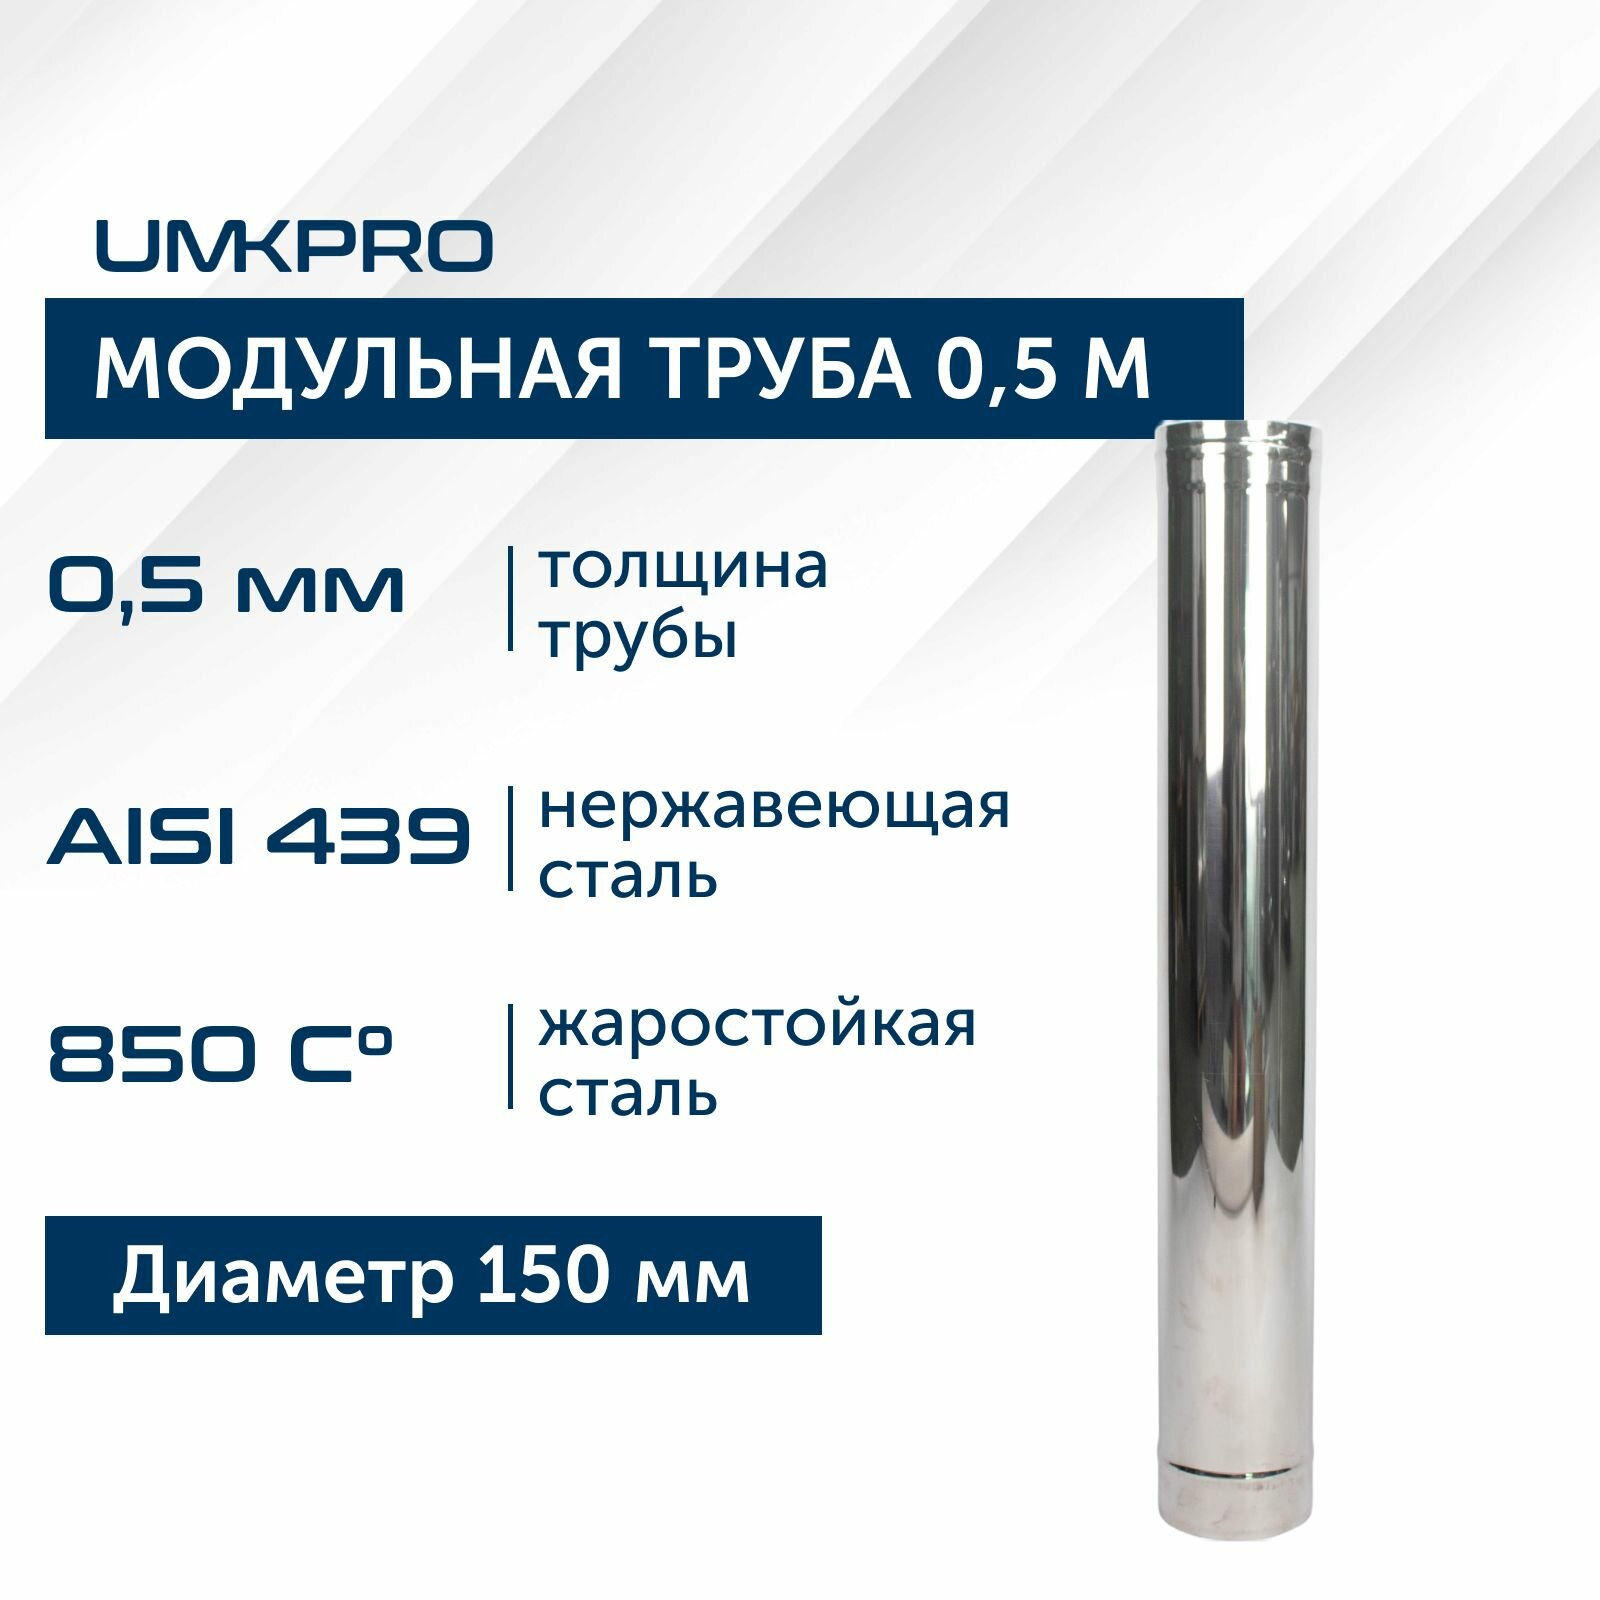 Труба модульная для дымохода 0,5 м UMKPRO D 150, AISI 439/0,5мм